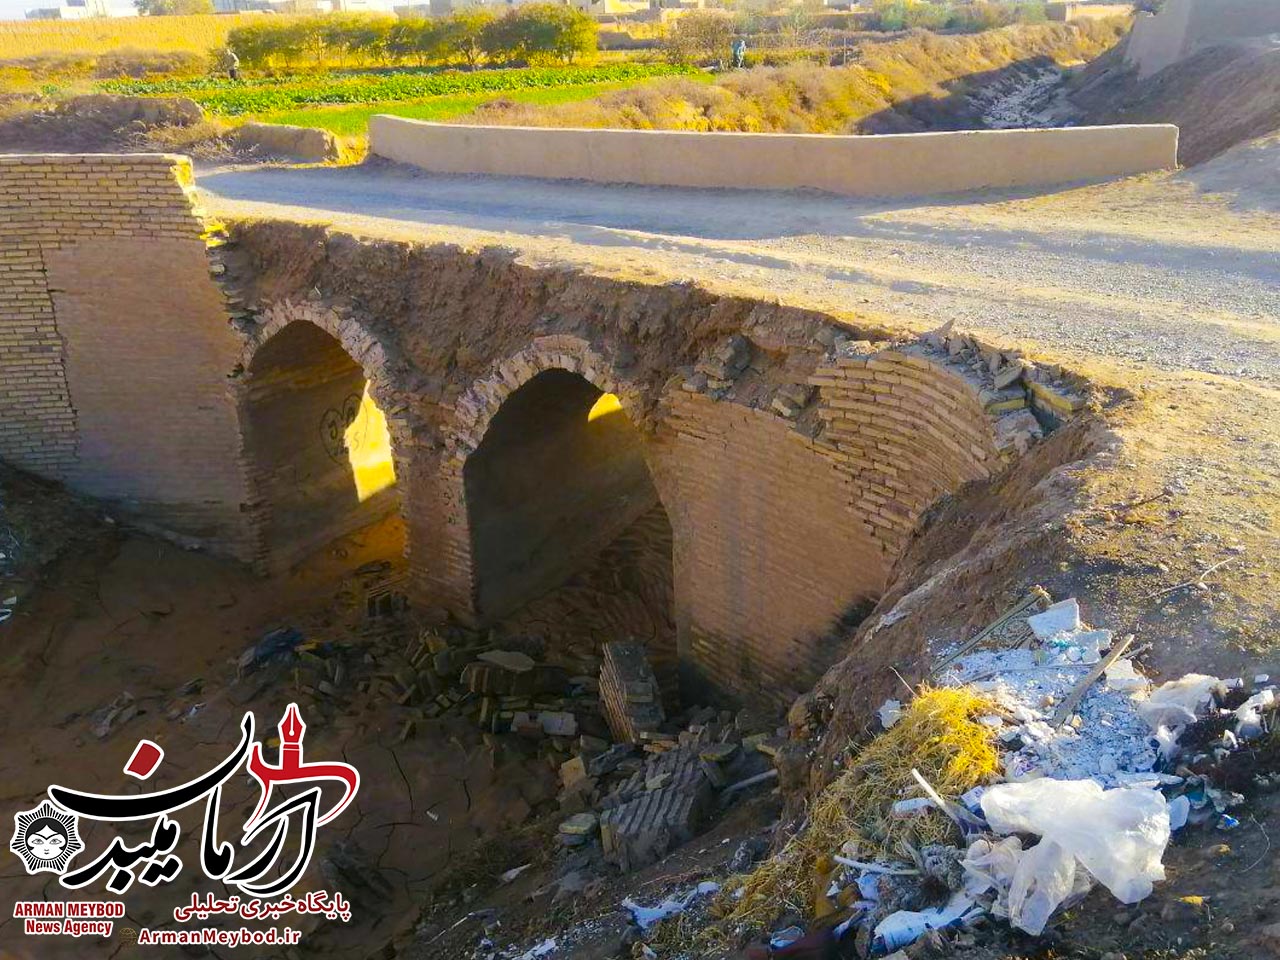 ⚠️ خطر ریزش پلی قدیمی در محله ده آباد شهرستان میبد / مسئولین تا اتفاقی رخ نداده اقدام کنید